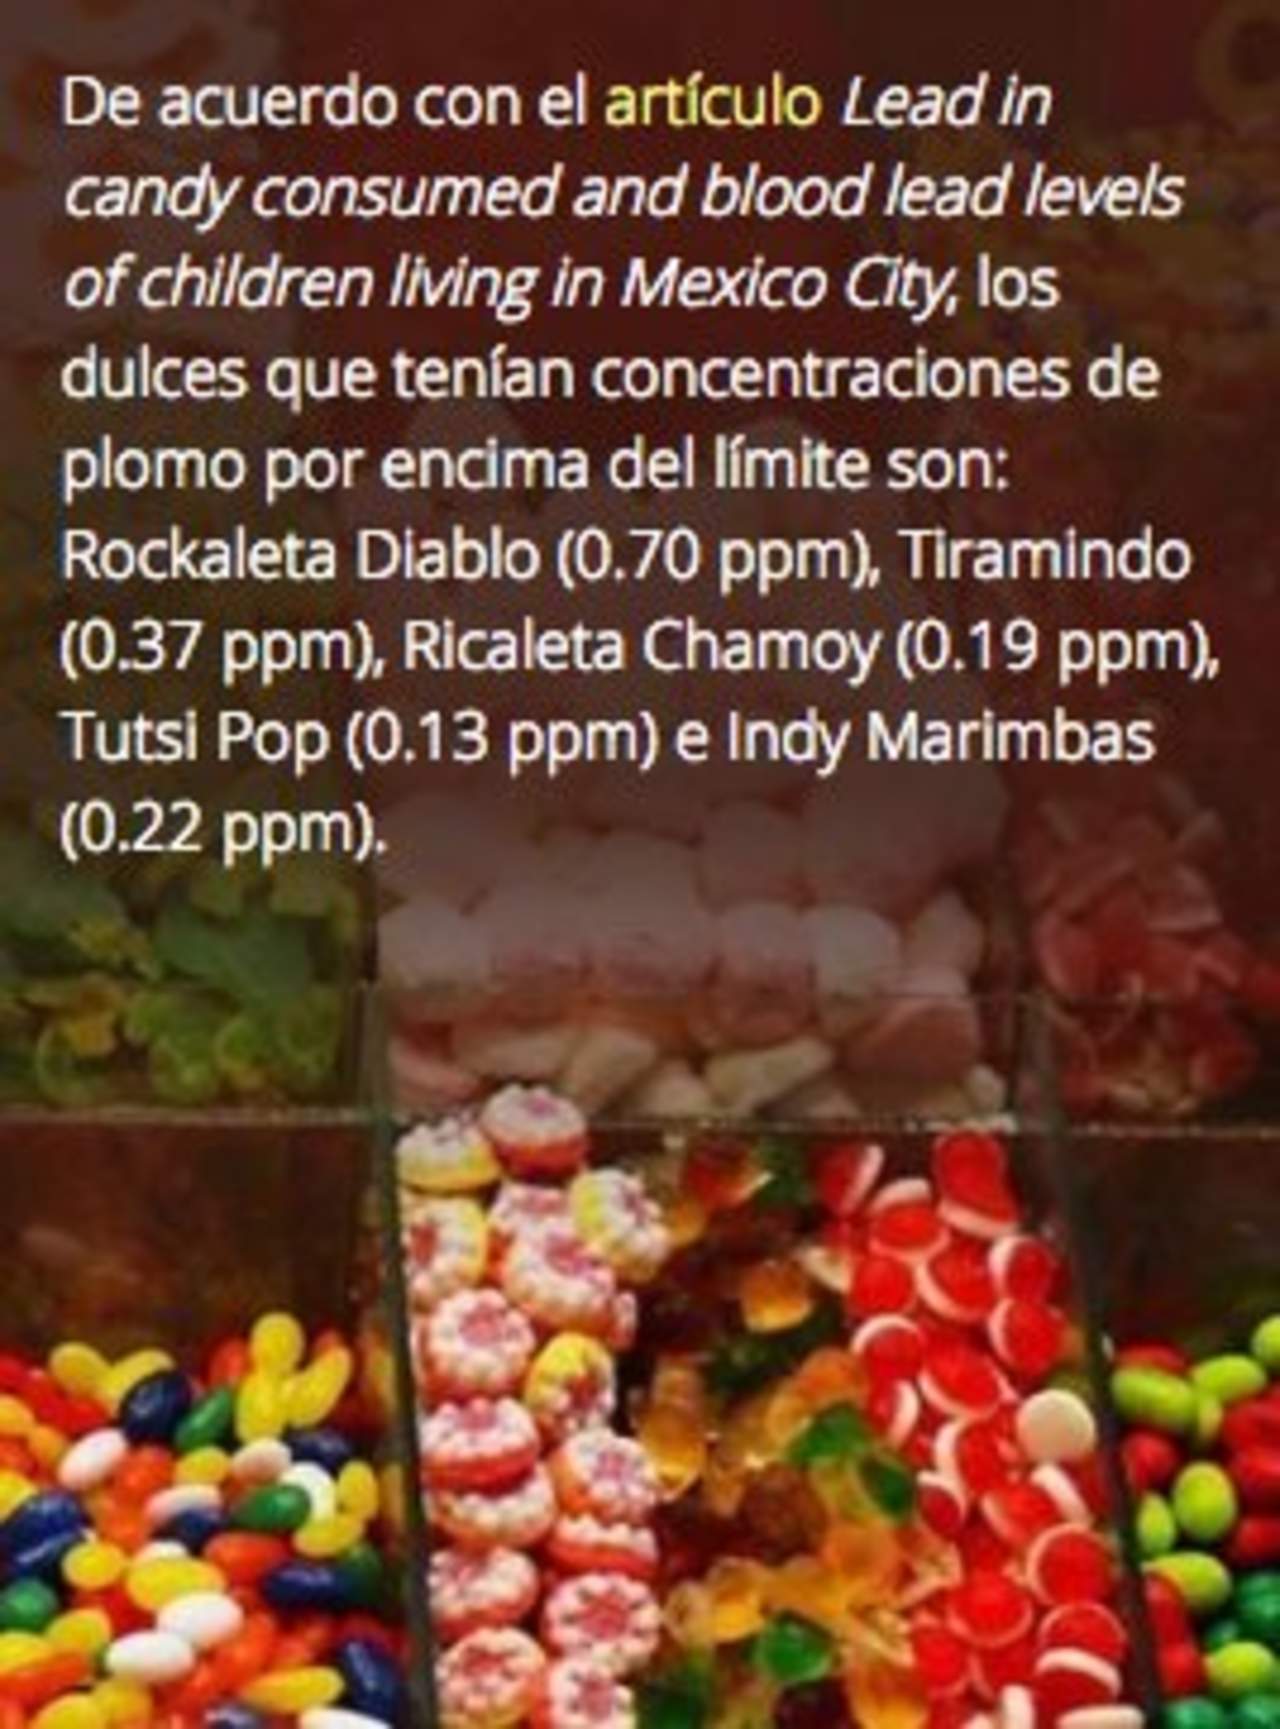 Los dulces más consumidos en México tienen altos niveles de plomo, lo que representa un riesgo a la salud. (TWITTER)